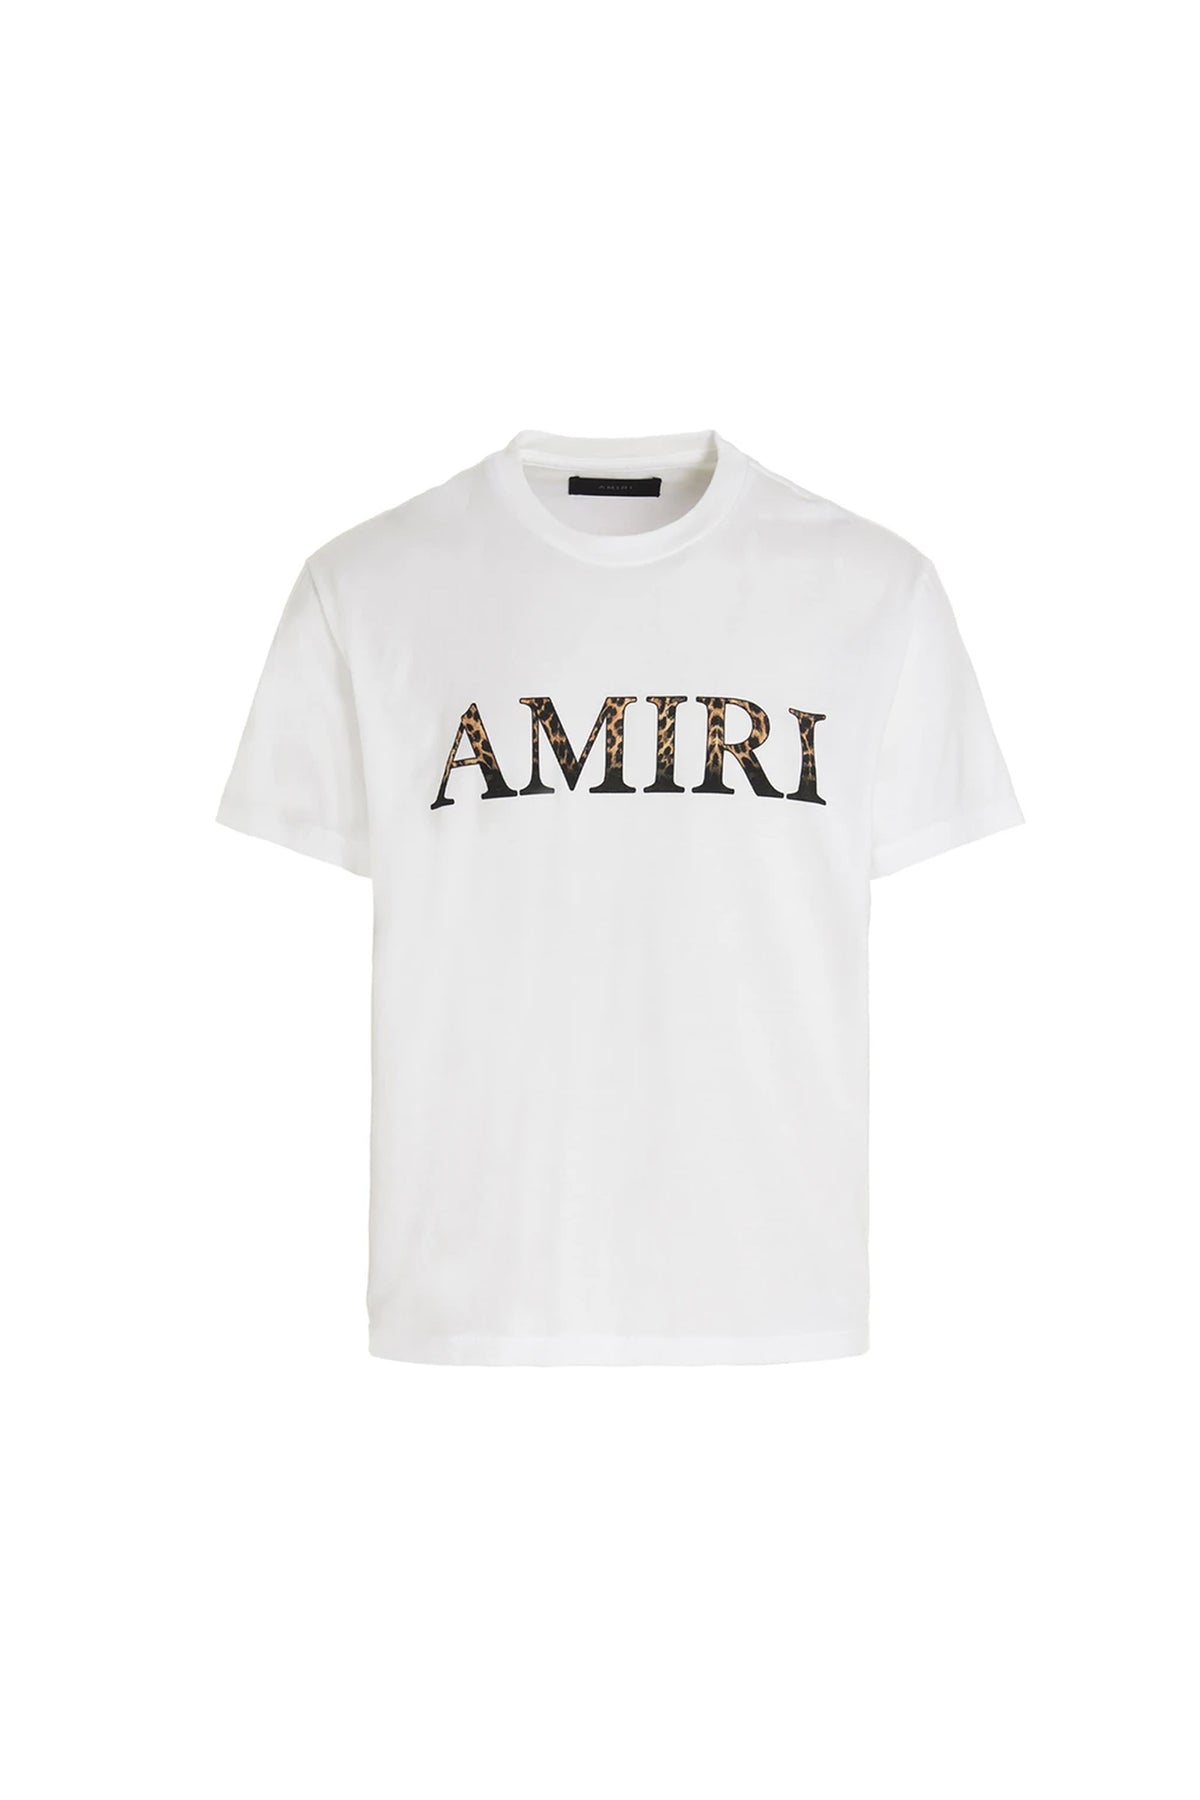 AMIRI logo-print cotton T-shirt White